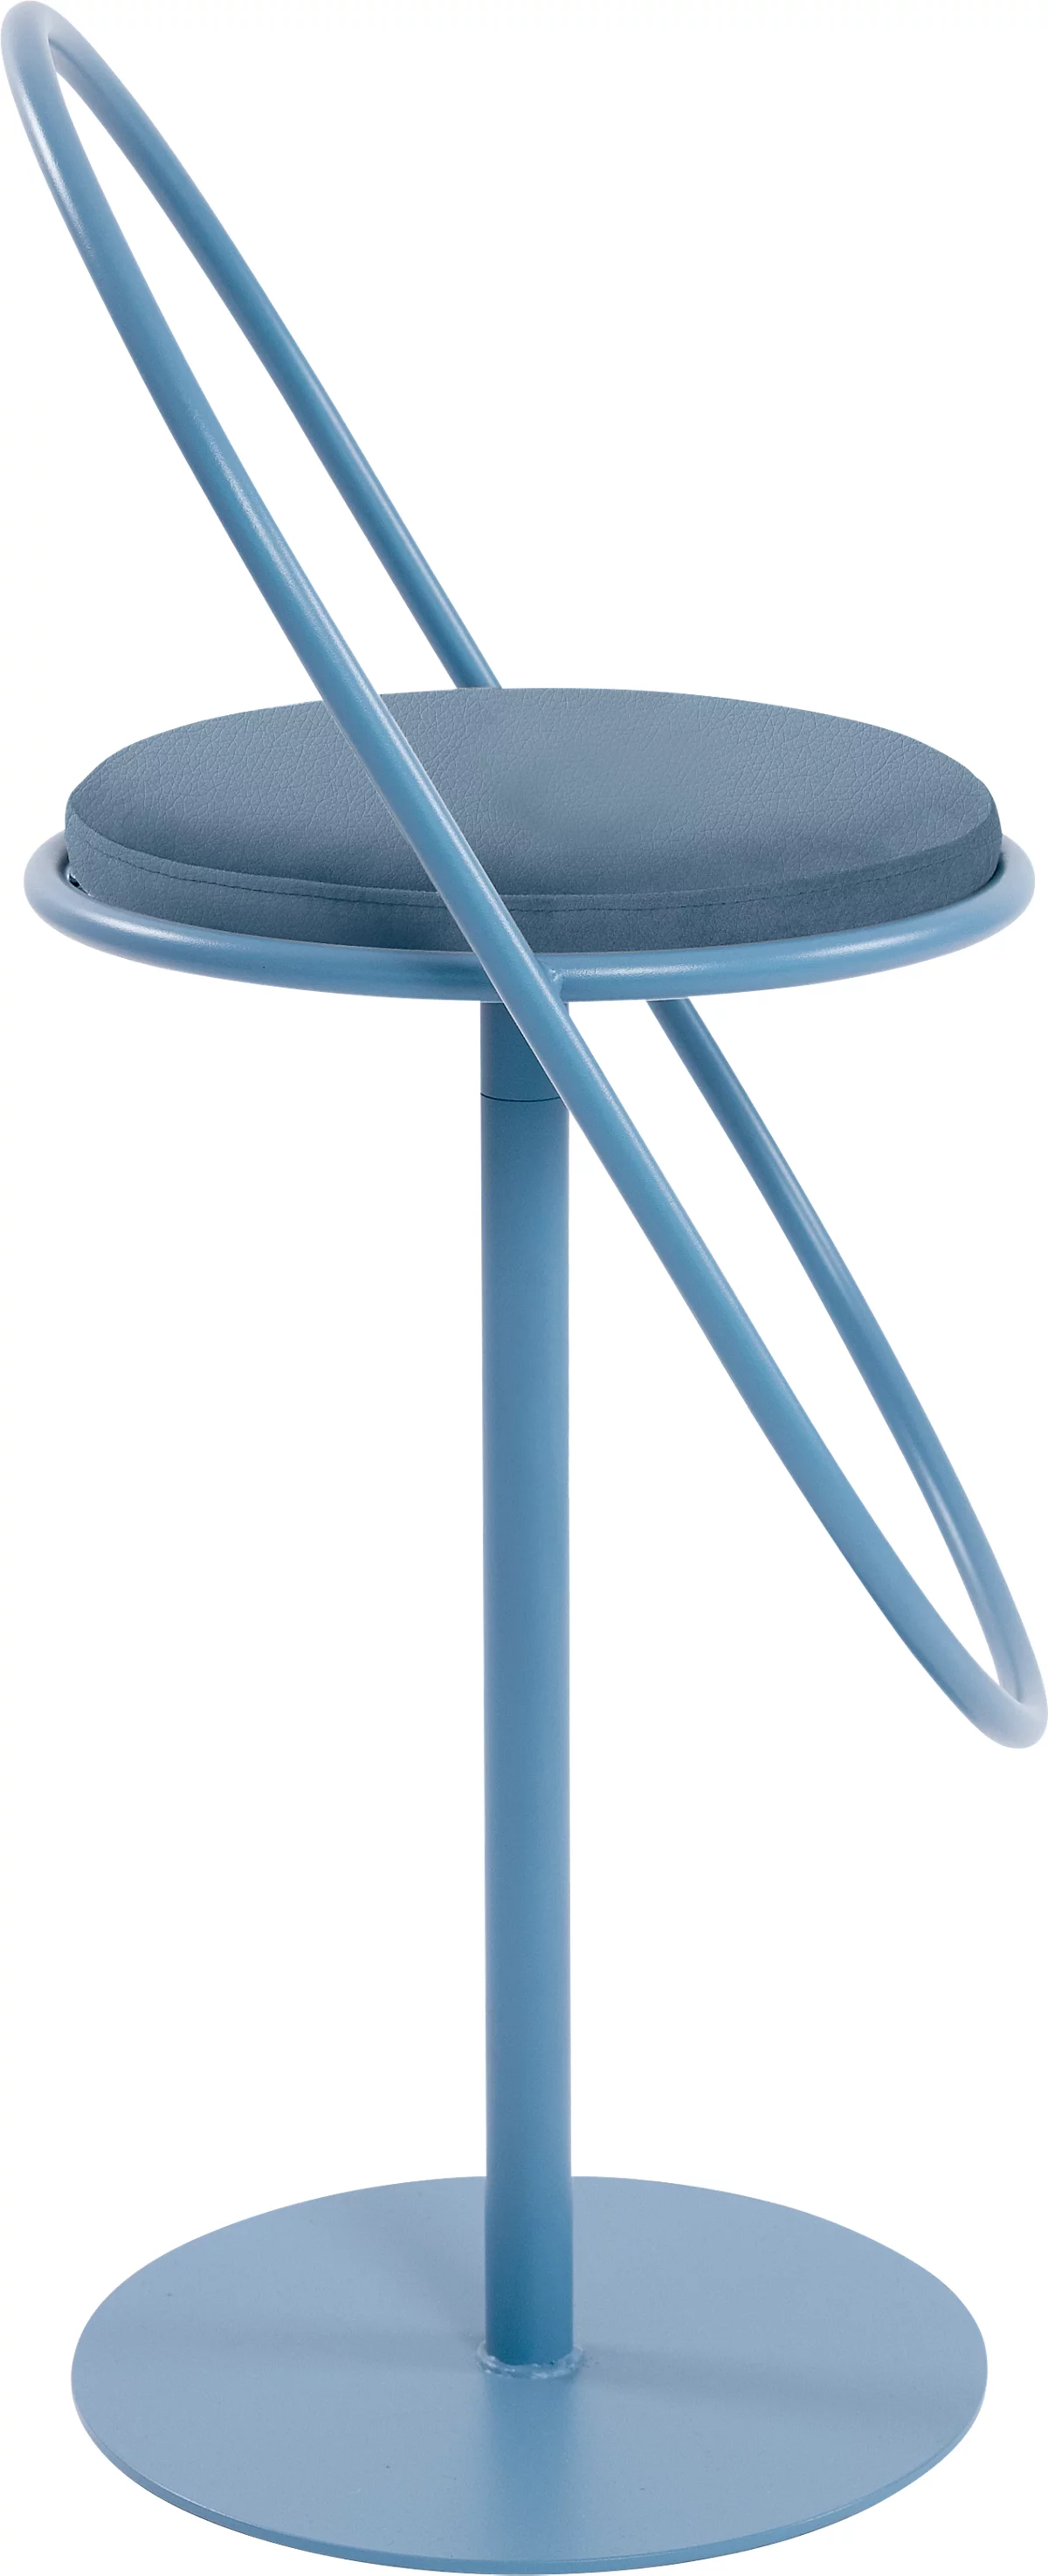 Barhocker Paperflow Saturne, mit Rückenlehne, Sitzhöhe 765 mm, gepolstert, zu 100 % recycelbar, Kunstlederbezug blau, Gestell blau